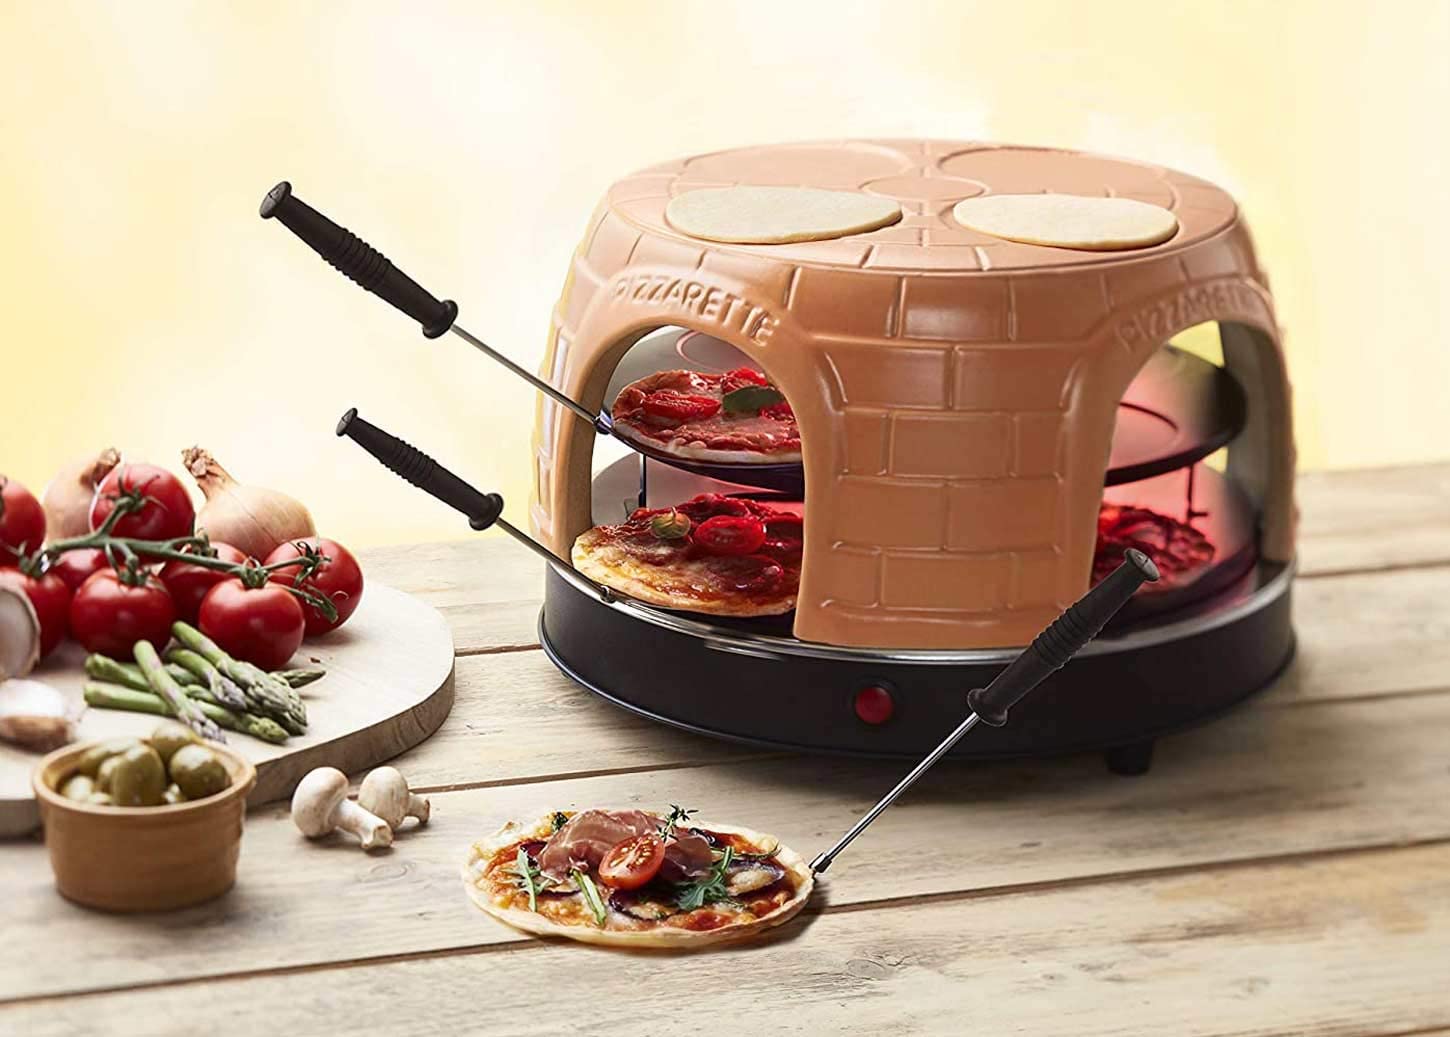 Emerio Pizzarette Original Pizza Oven for Mini Pizzas, Handmade Terracotta Clay Cover, Patented Design, Real Family Fun